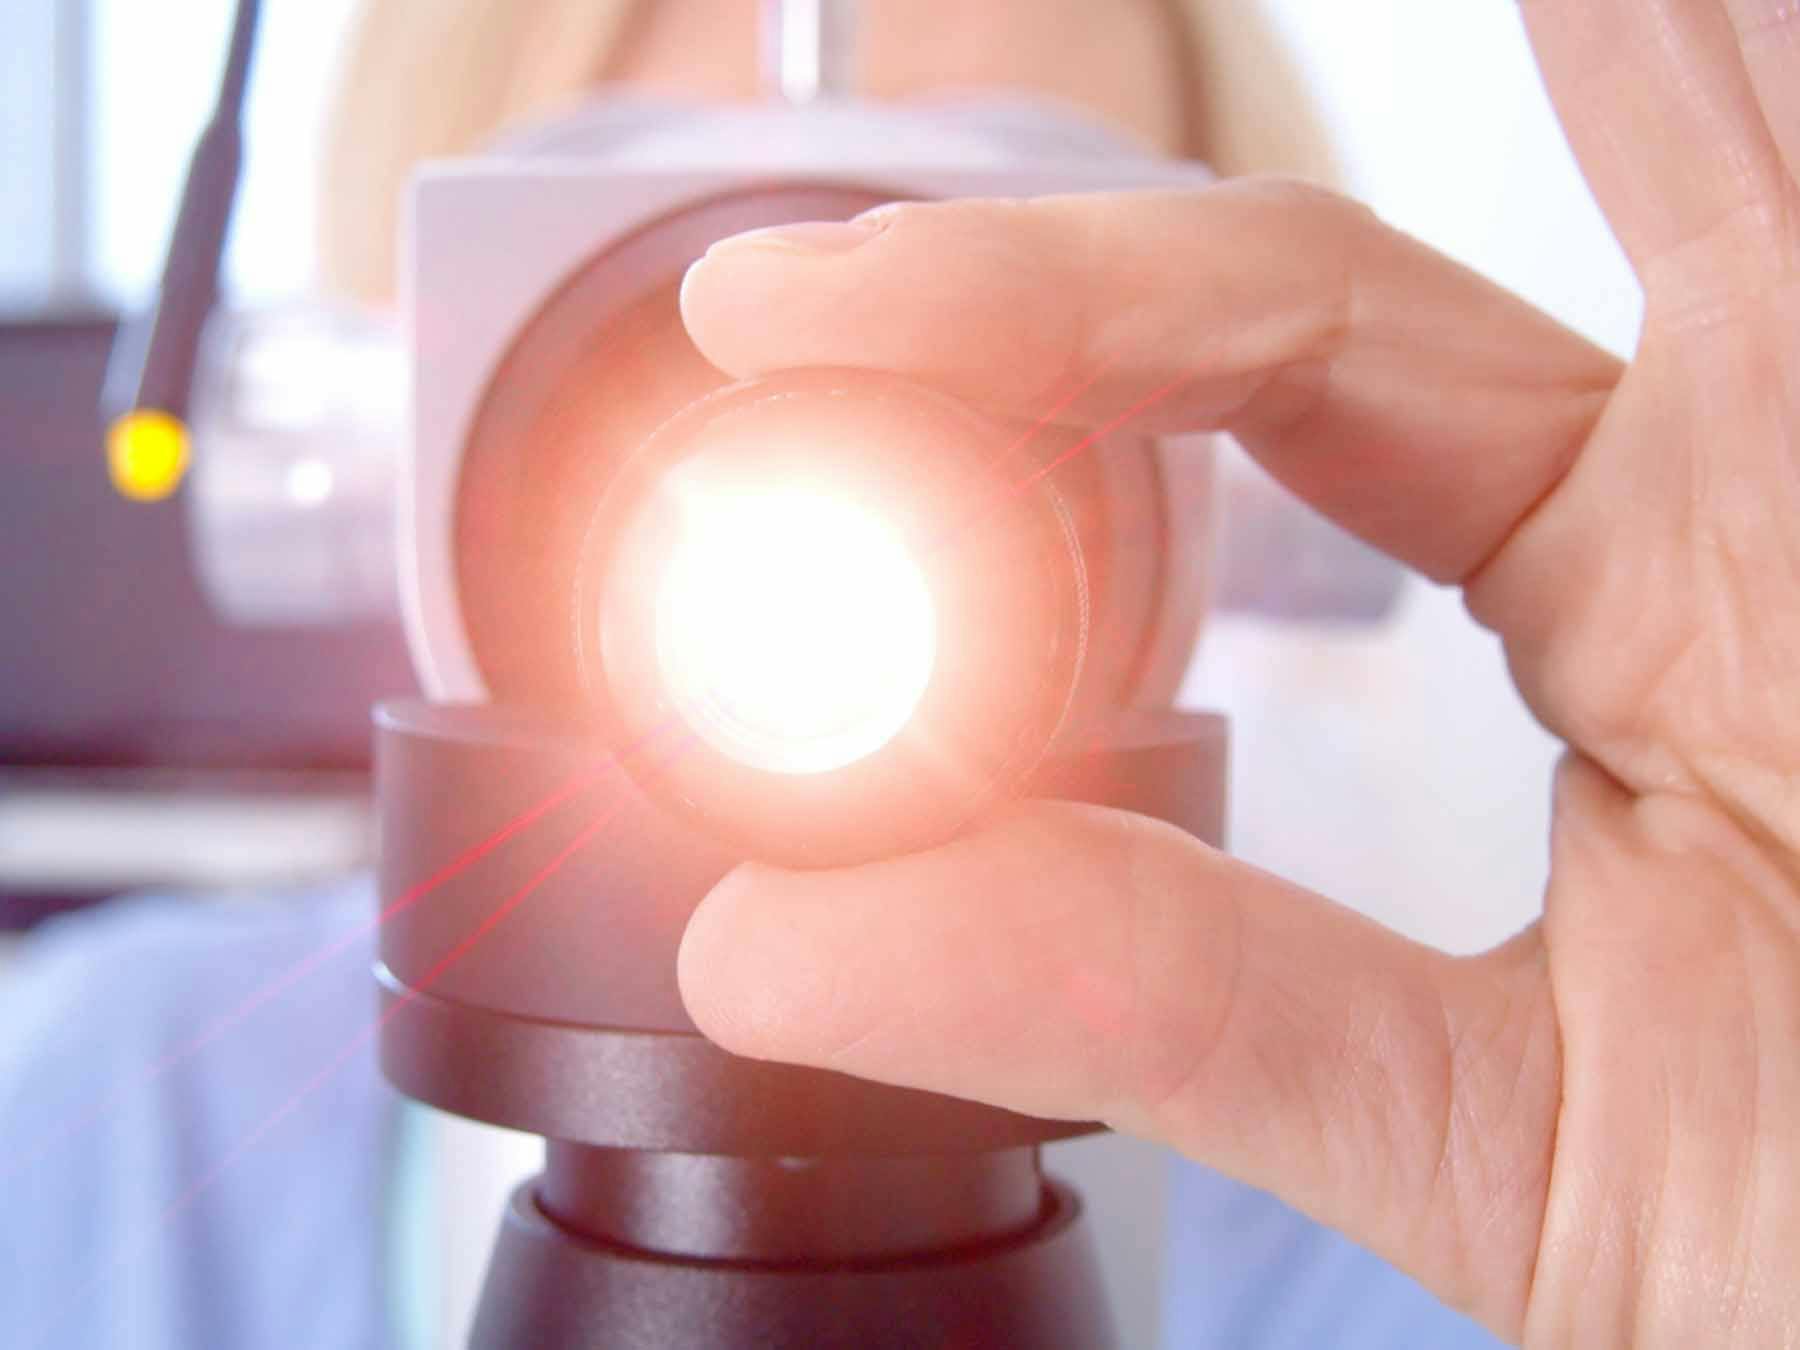 Come eliminiamo i disturbi visivi con la vitreolisi laser